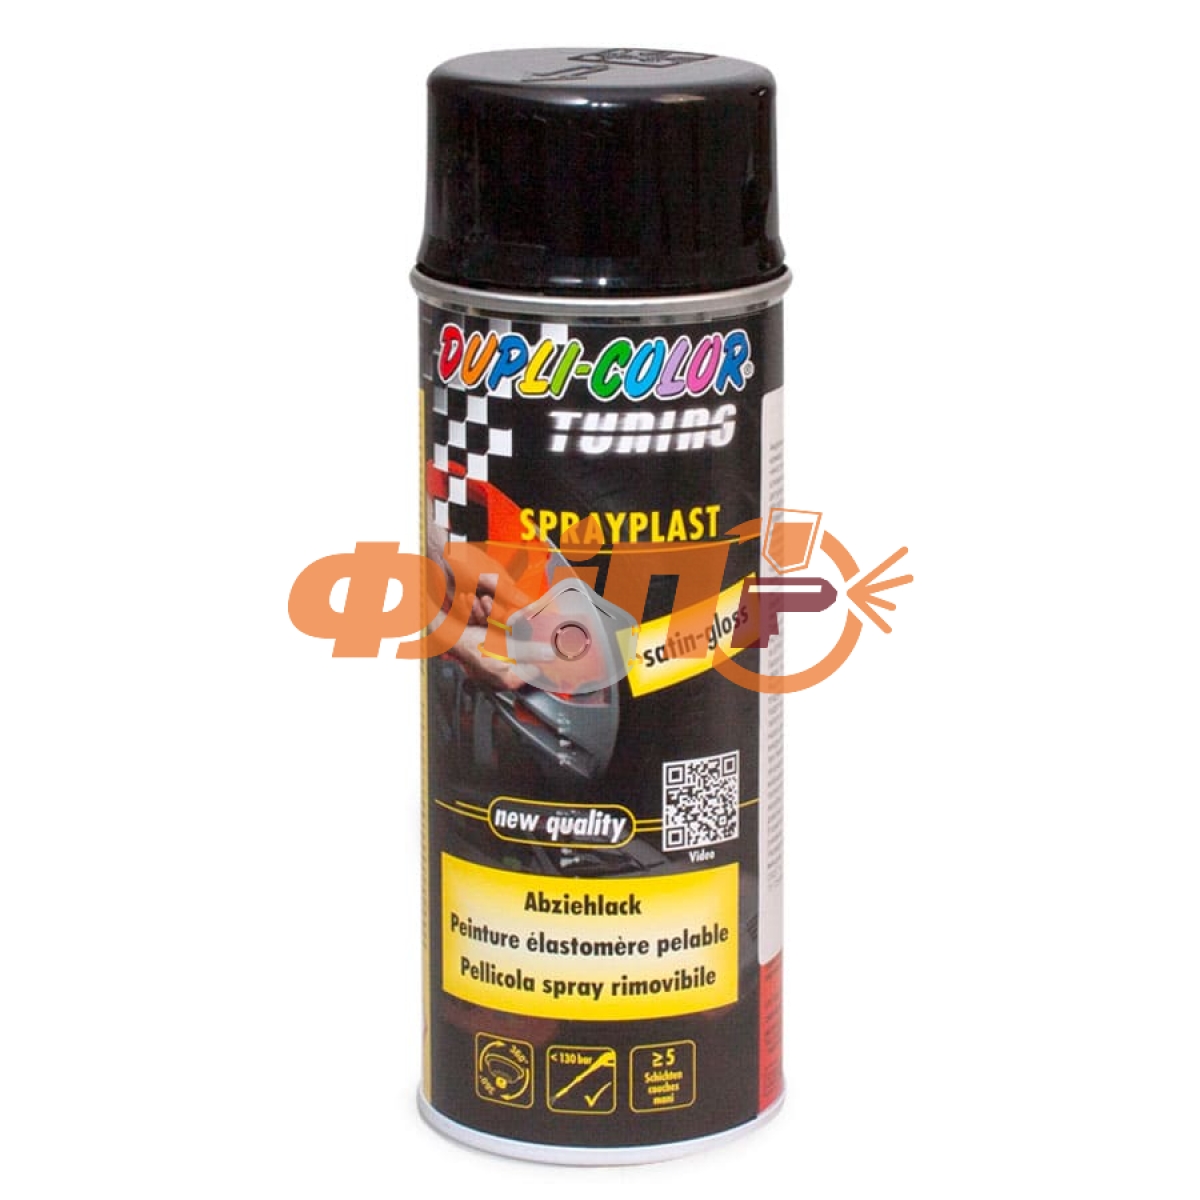 Черная жидкая резина для авто в баллончике Dupli-Color Sprayplast: цена .